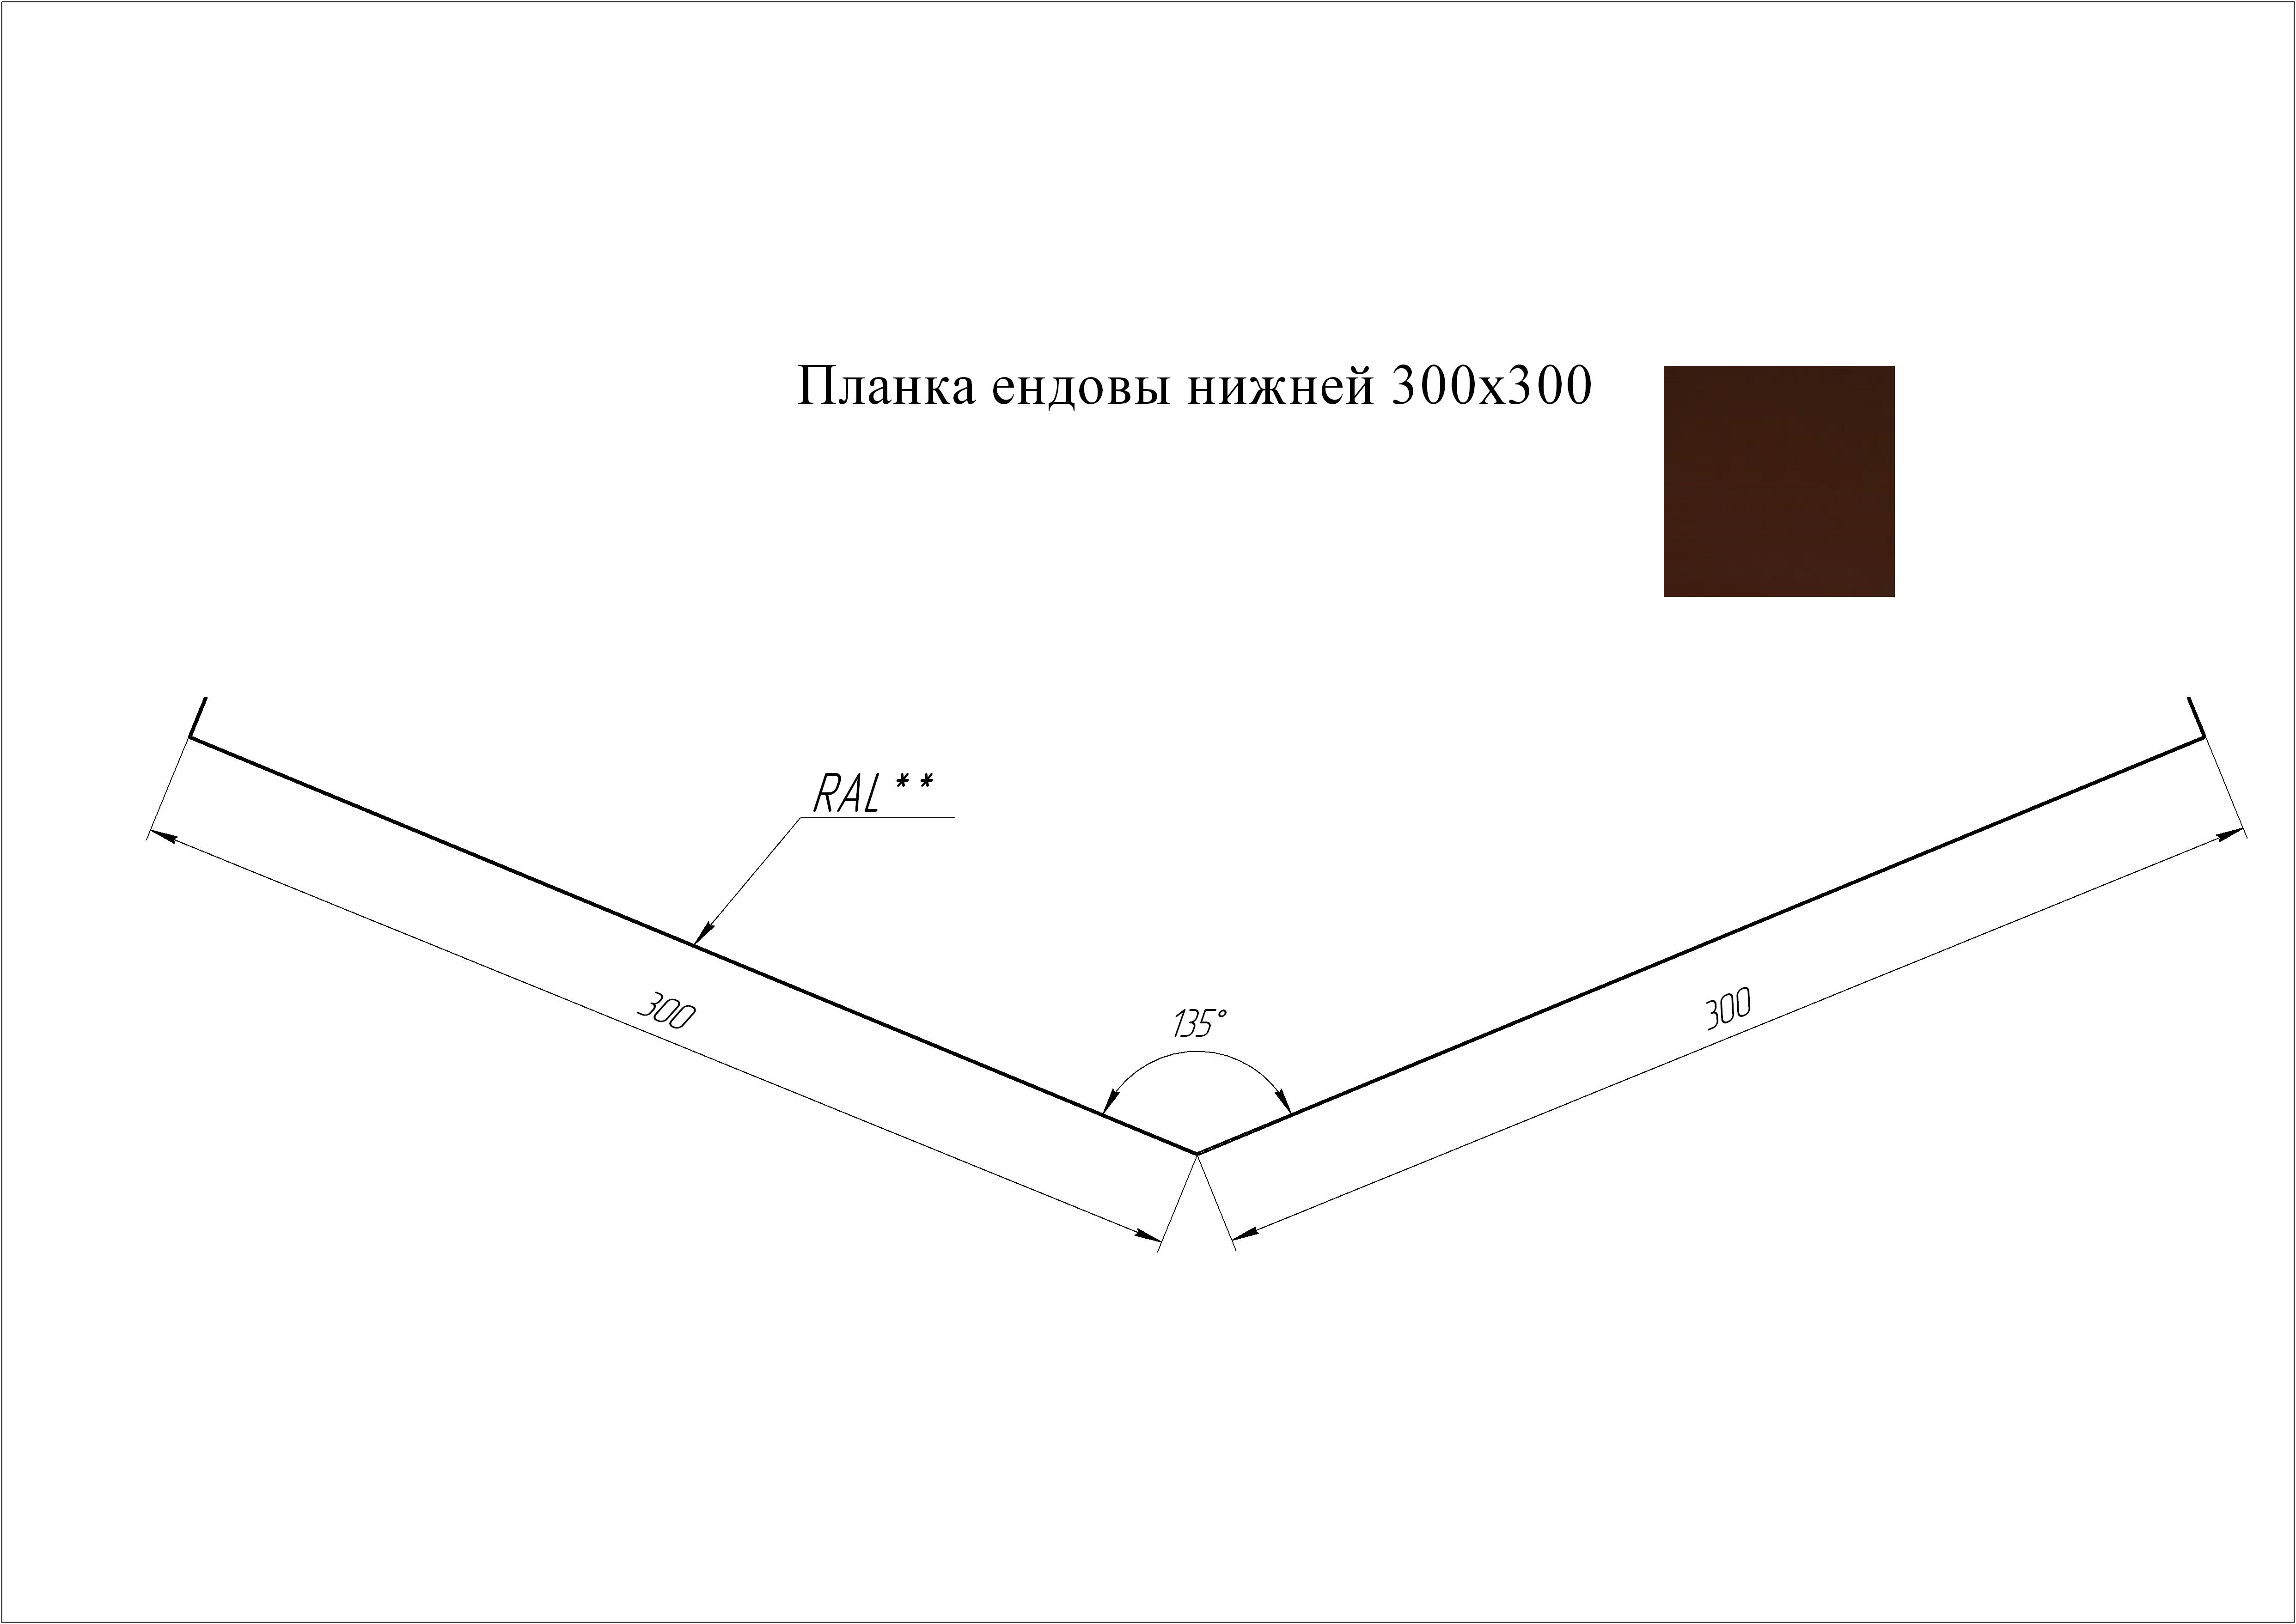 Ендова нижняя 300*300 мм L=2 м GL Atlas RAL 8017 - коричневый шоколад